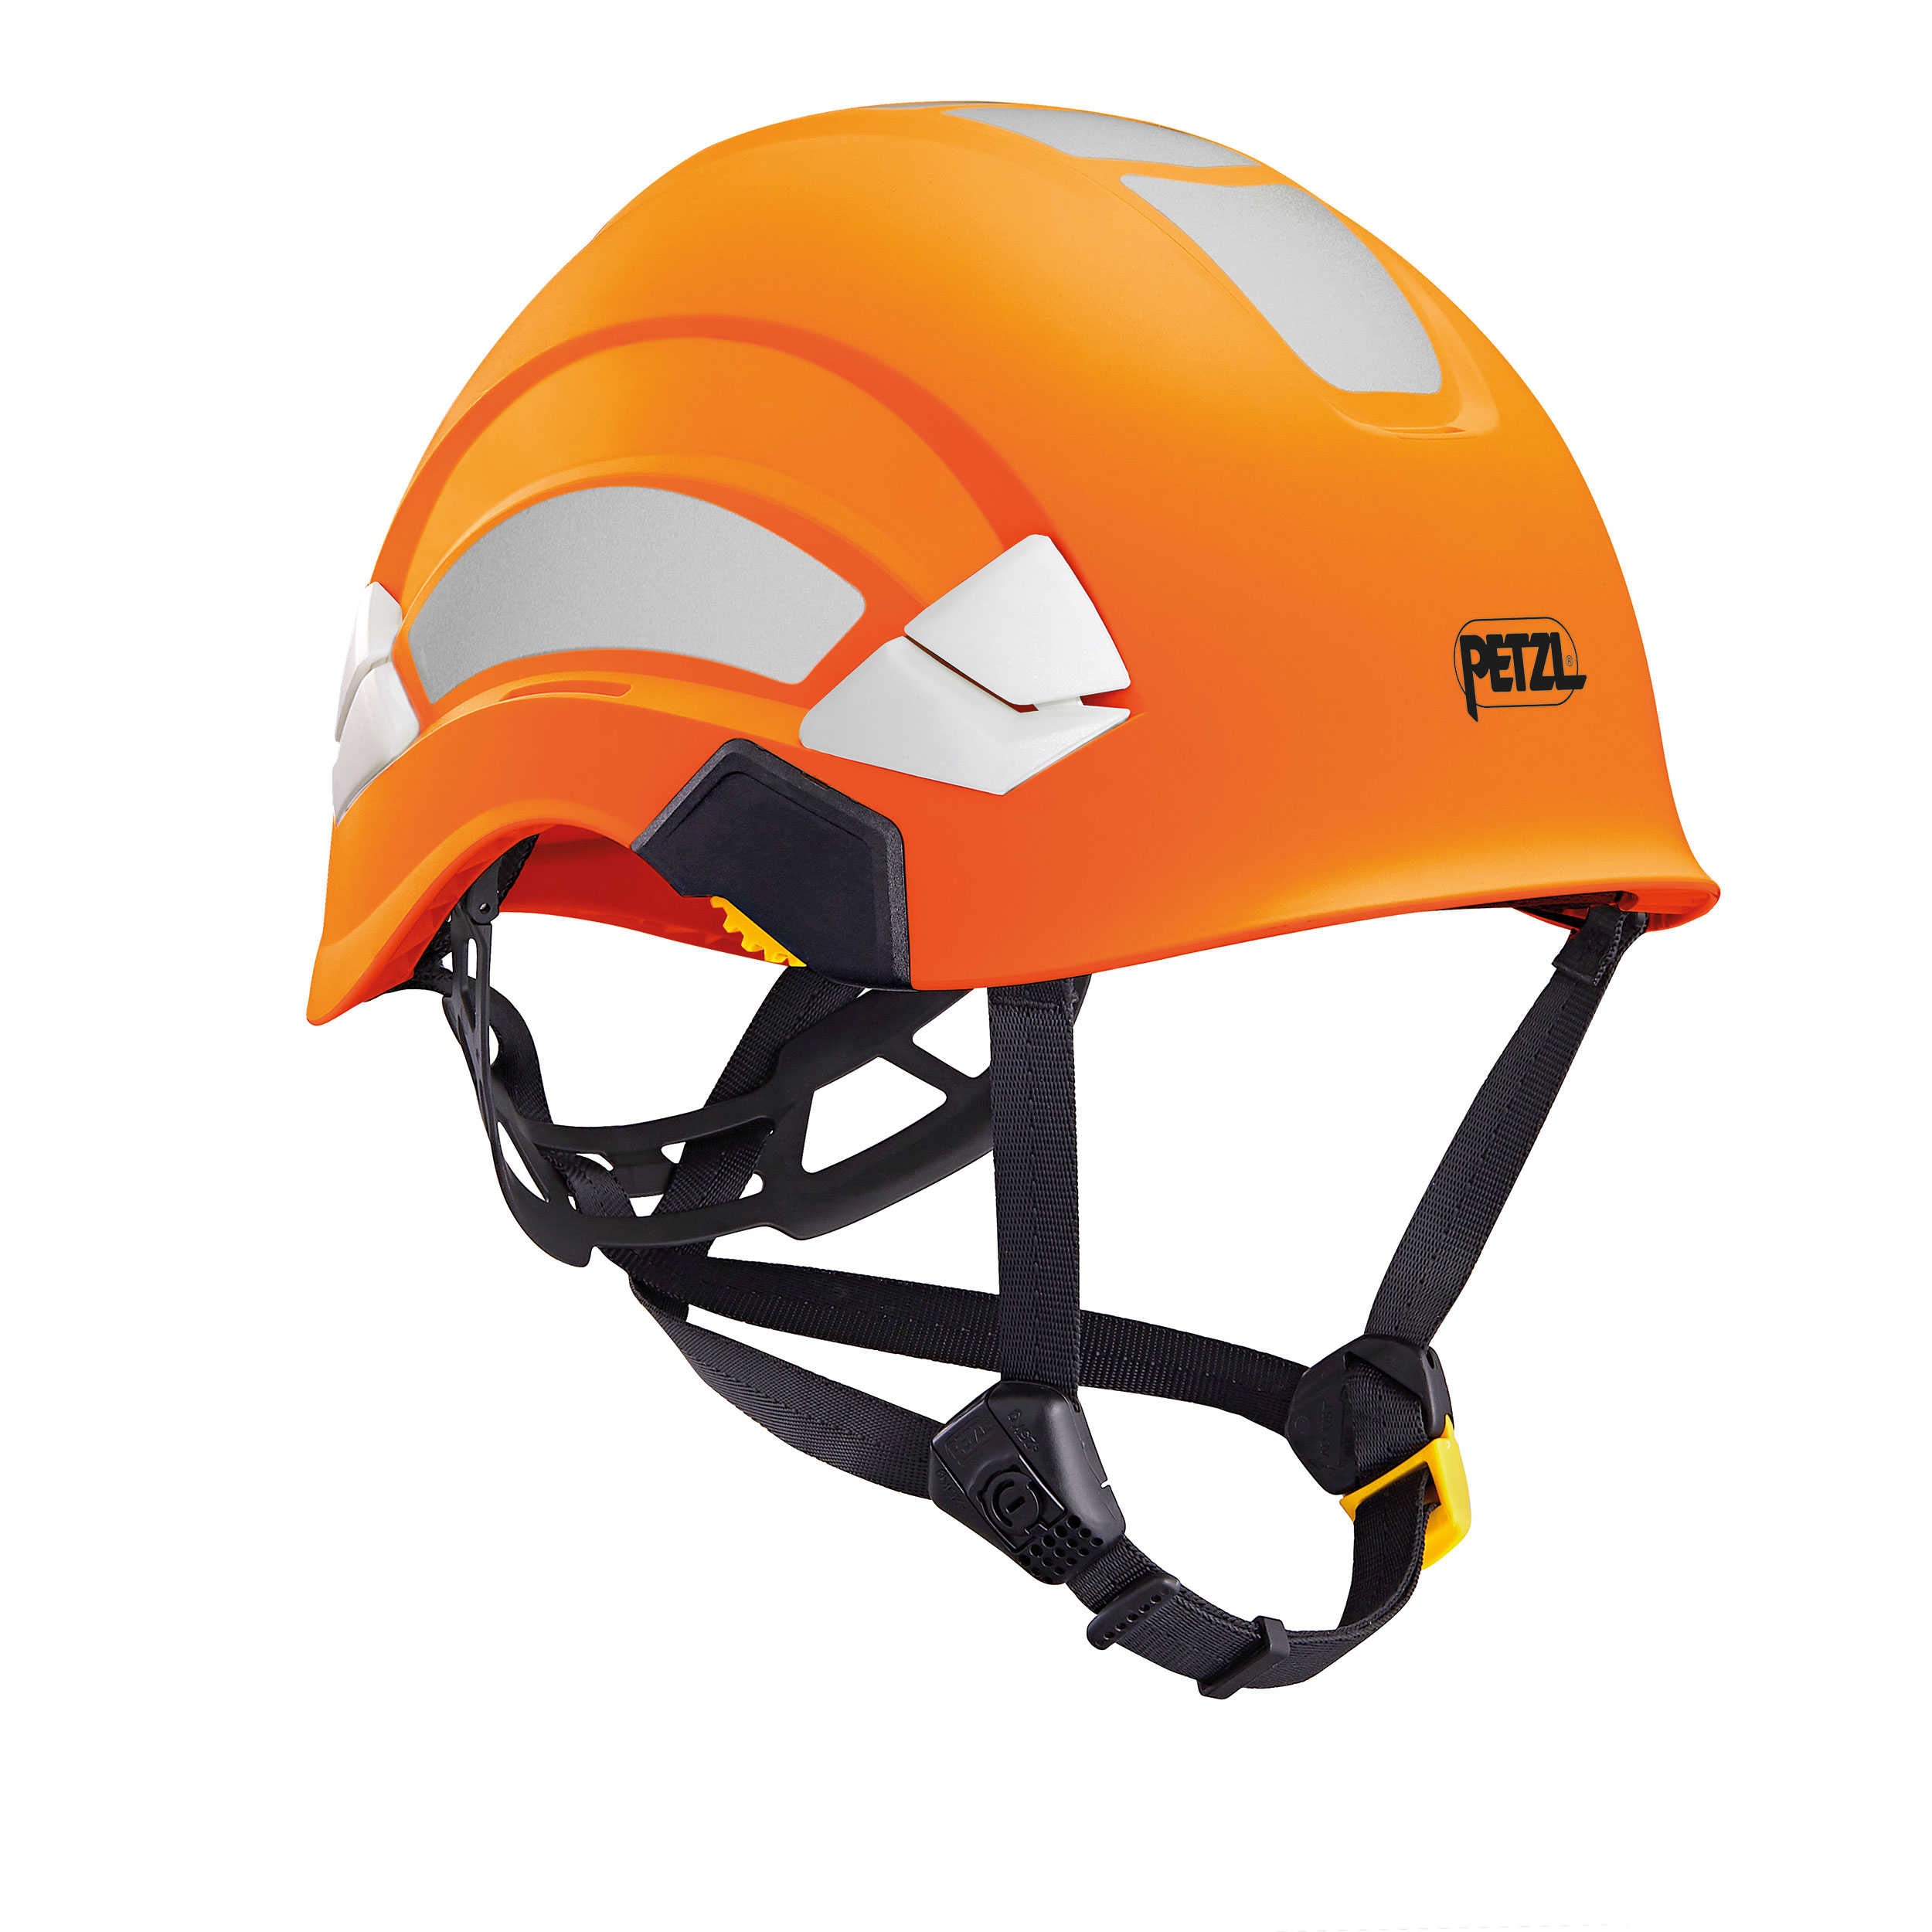 Helm Petzl Vertex Hi-Viz fluo oranje A010 